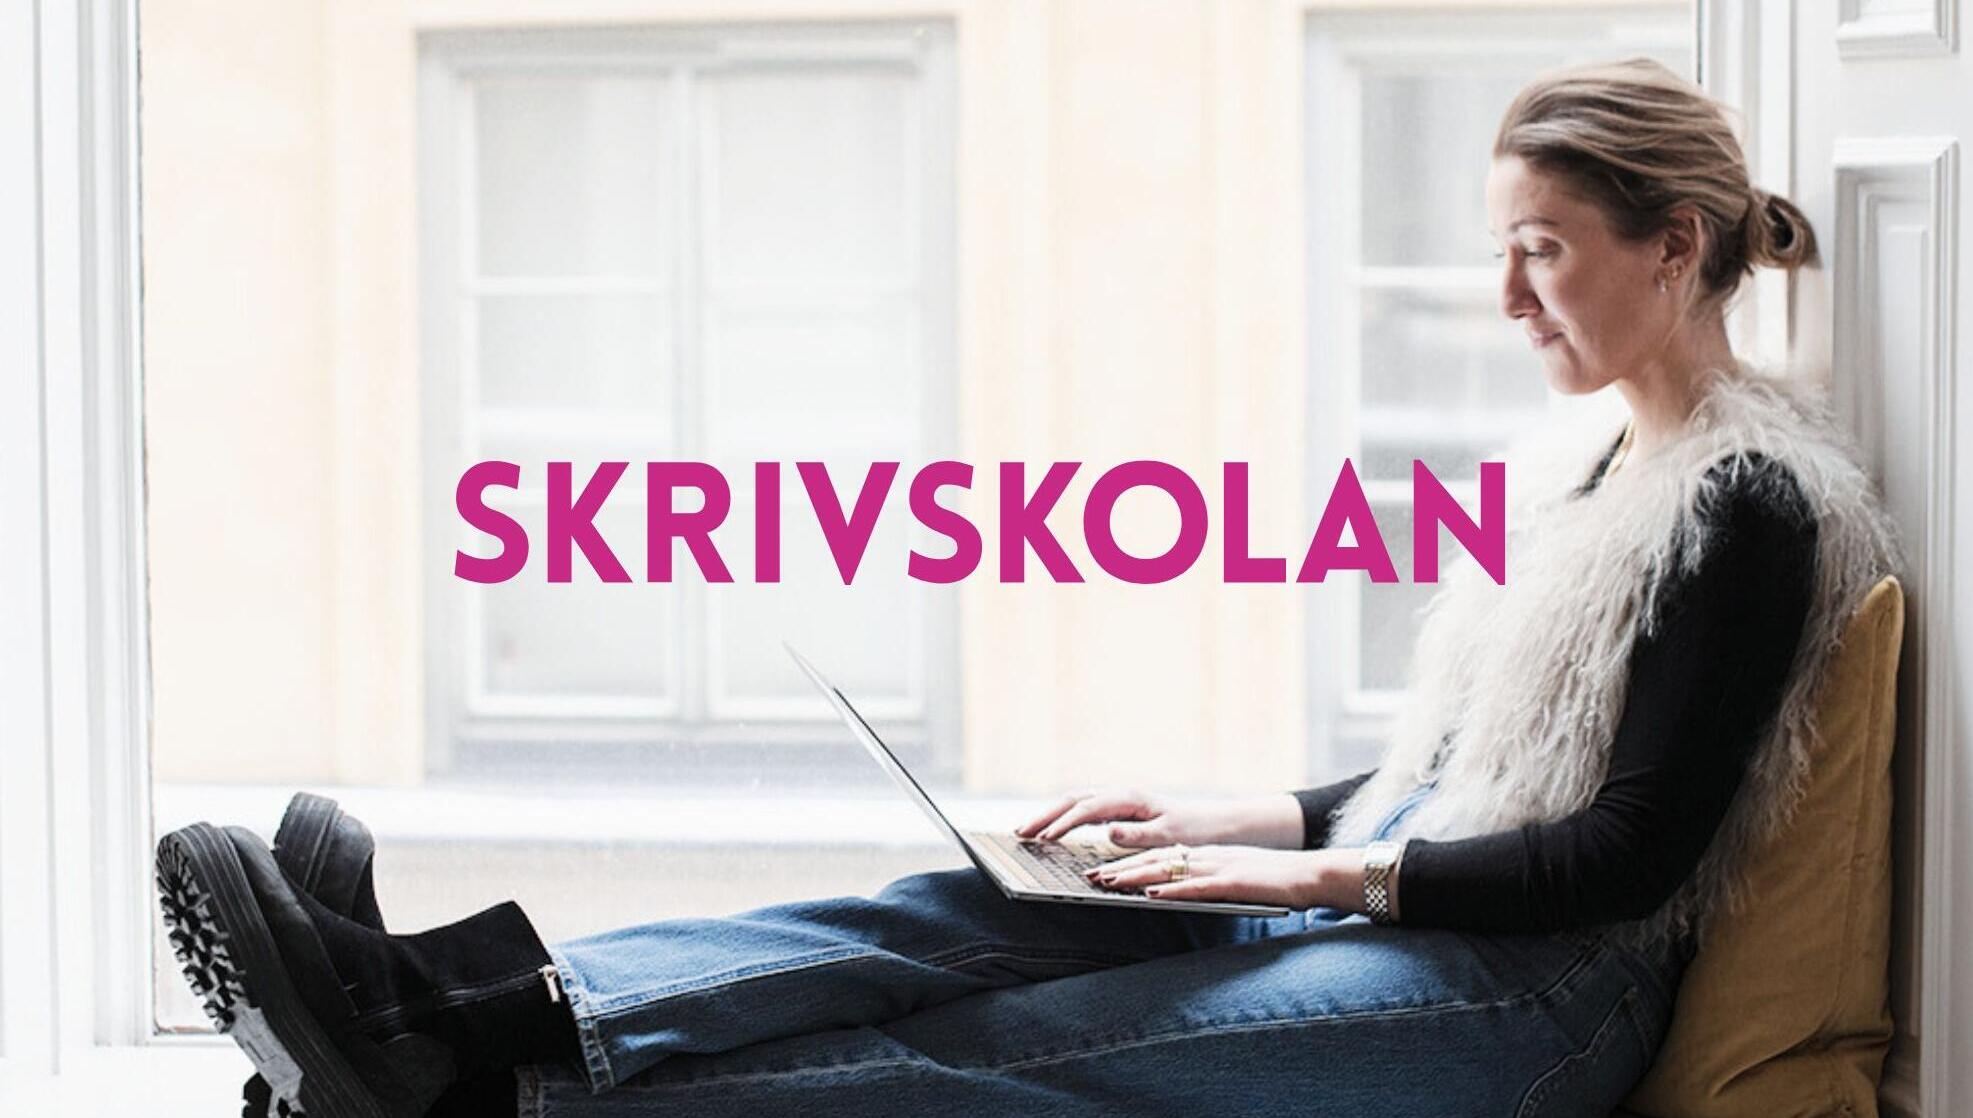 Digitala kurser – Skrivskolan.se har landat!